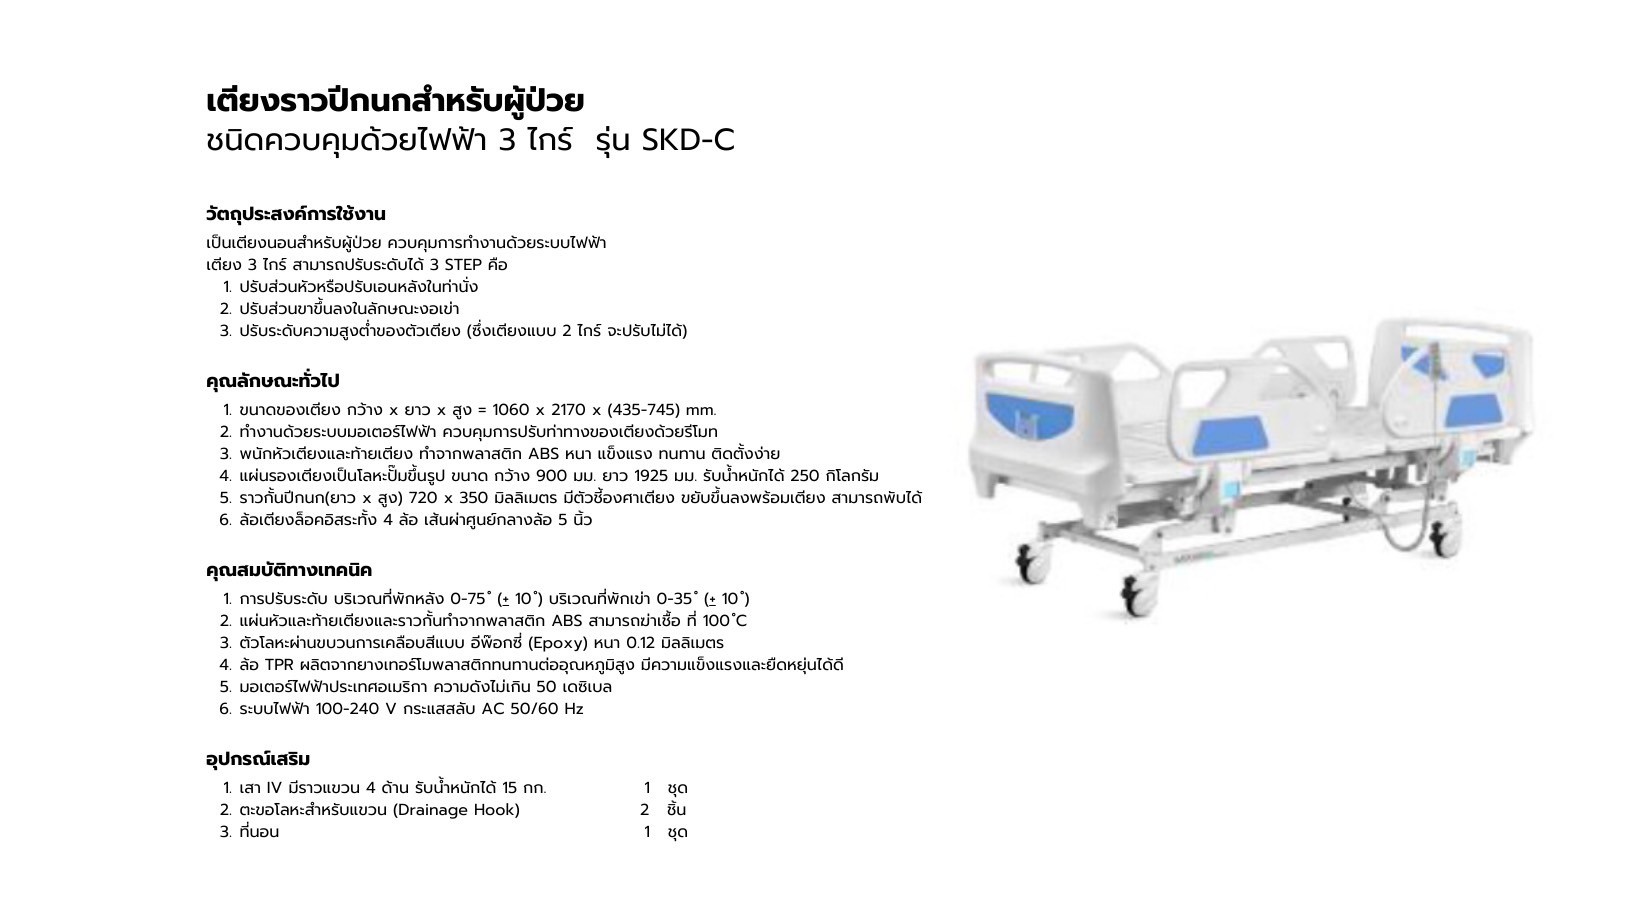 เตียงราวปีกนกสำหรับผู้ป่วย ชนิดควบคุมด้วยไฟฟ้า 3 ไกร์ Saikang รุ่น SKD-C